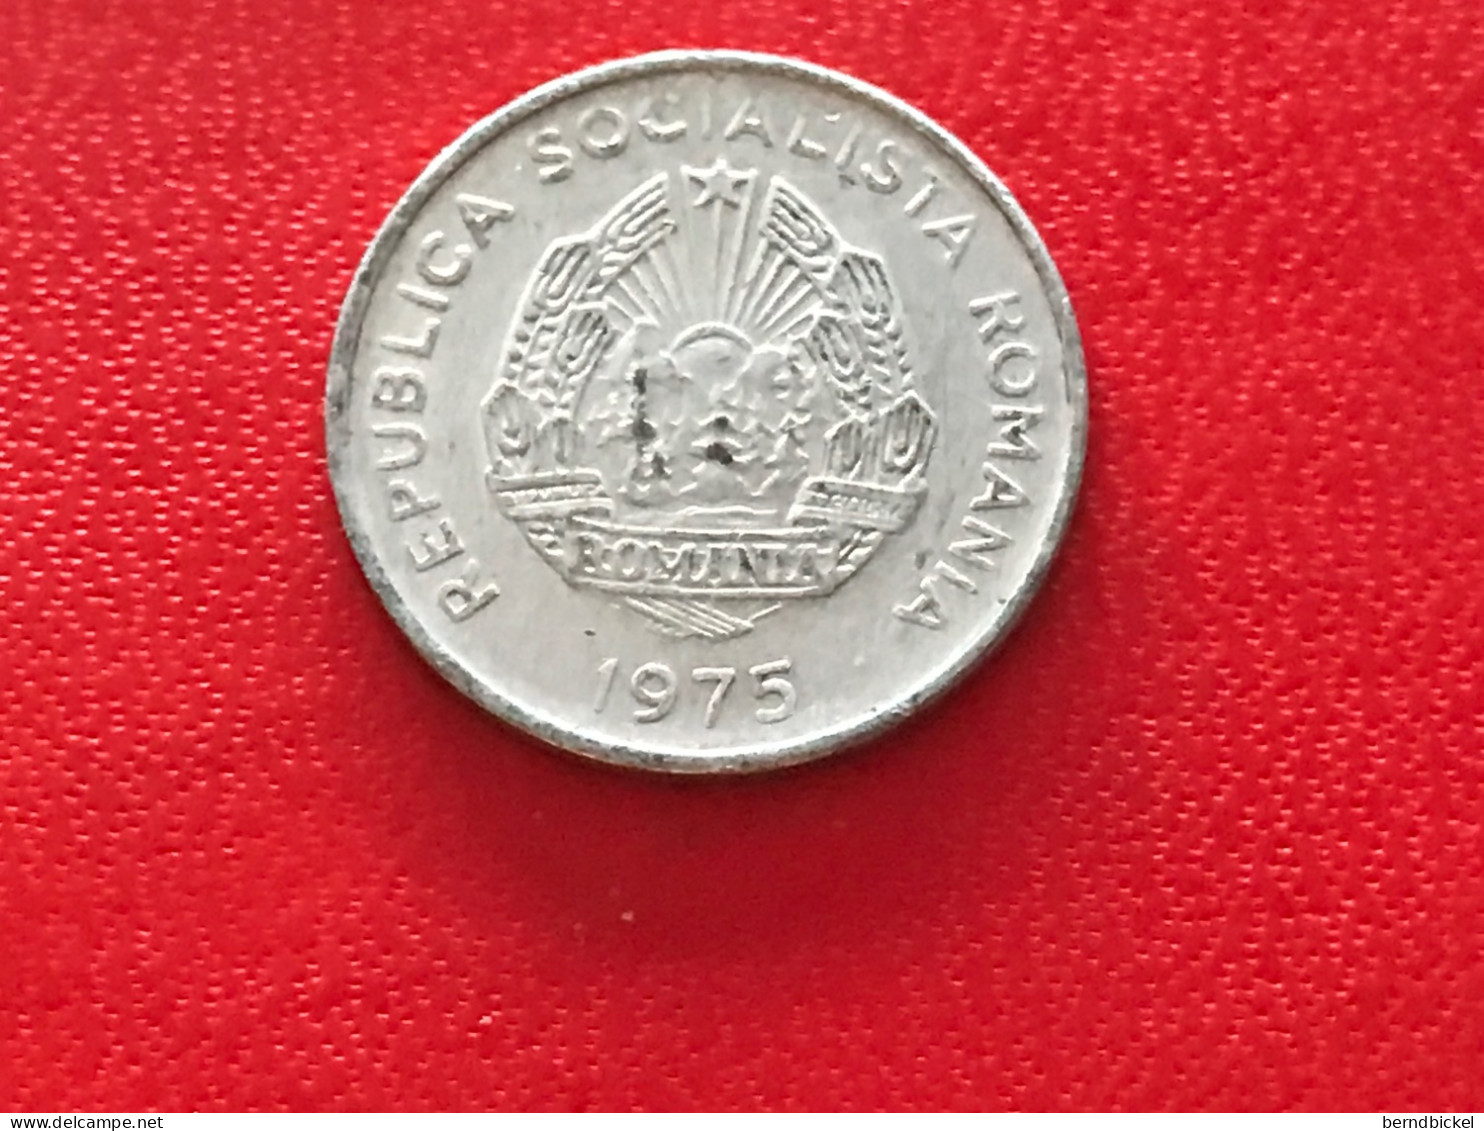 Münze Münzen Umlaufmünze Rumänien 15 Bani 1975 - Roumanie